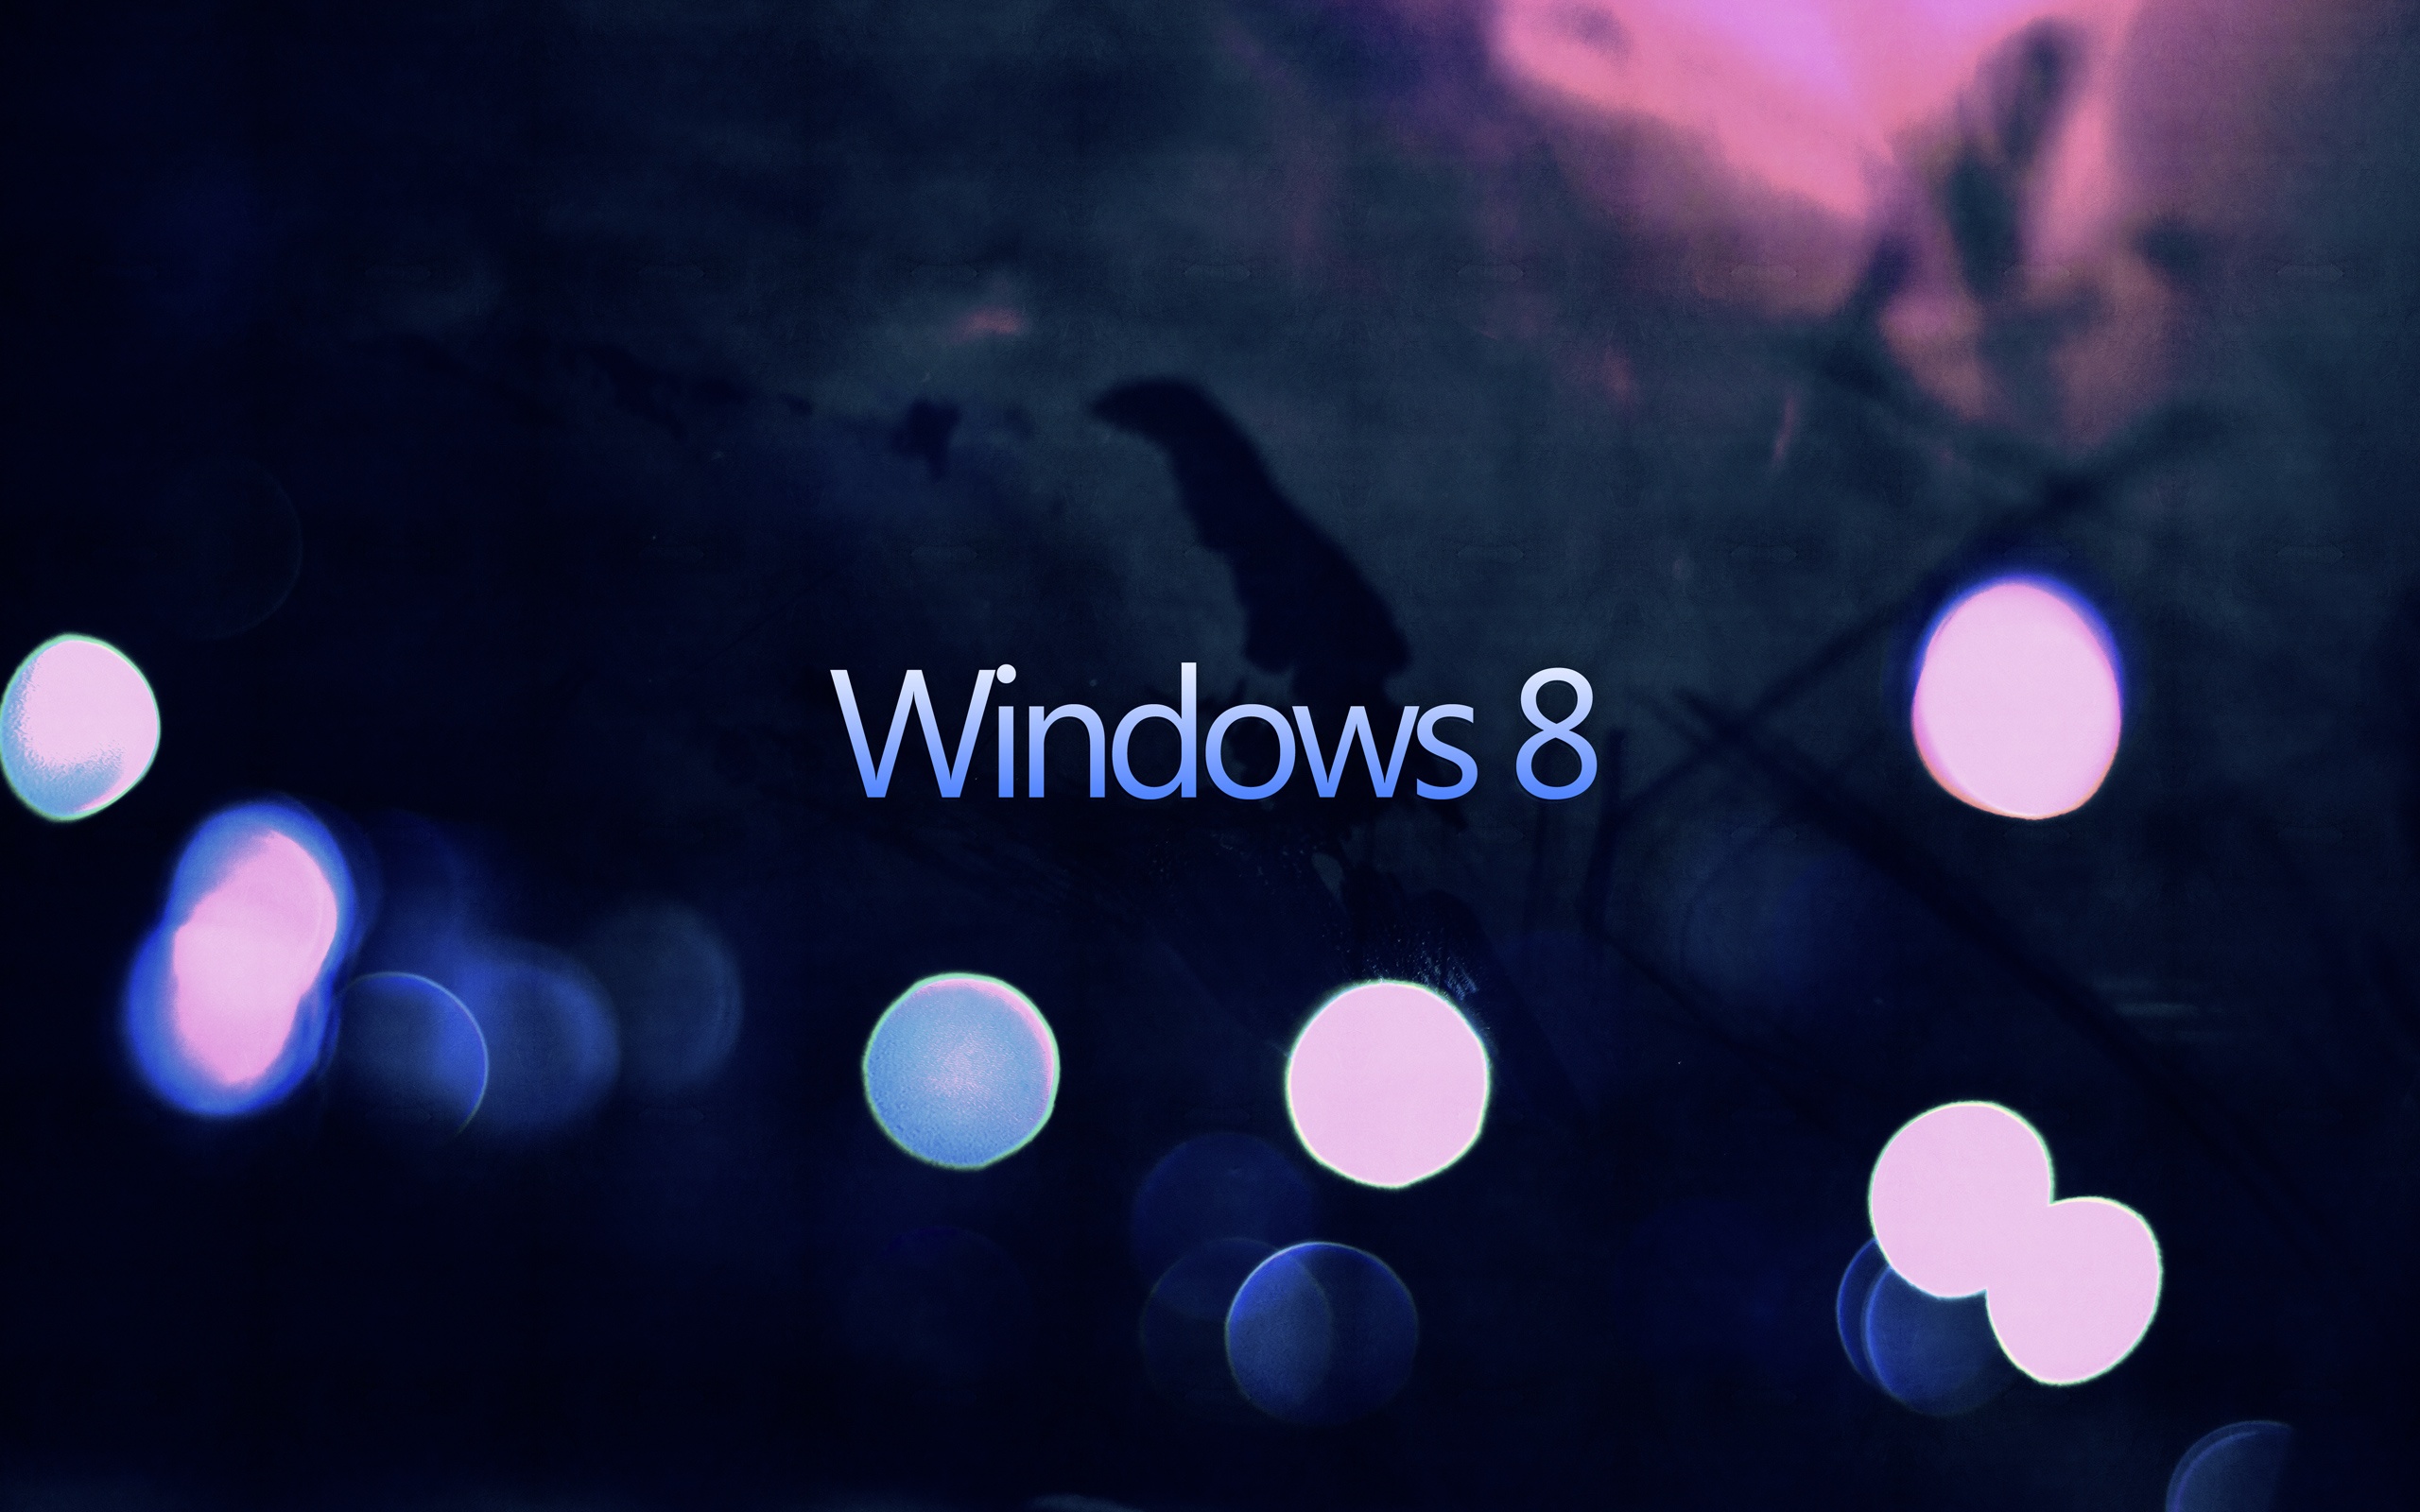 Windows 8 là hệ điều hành phổ biến và được yêu thích hiện nay. Hãy tìm hiểu về hình nền máy tính Windows 8 để làm mới giao diện của bạn với đủ những tùy chọn đẹp và đa dạng mà không mất thêm chi phí.